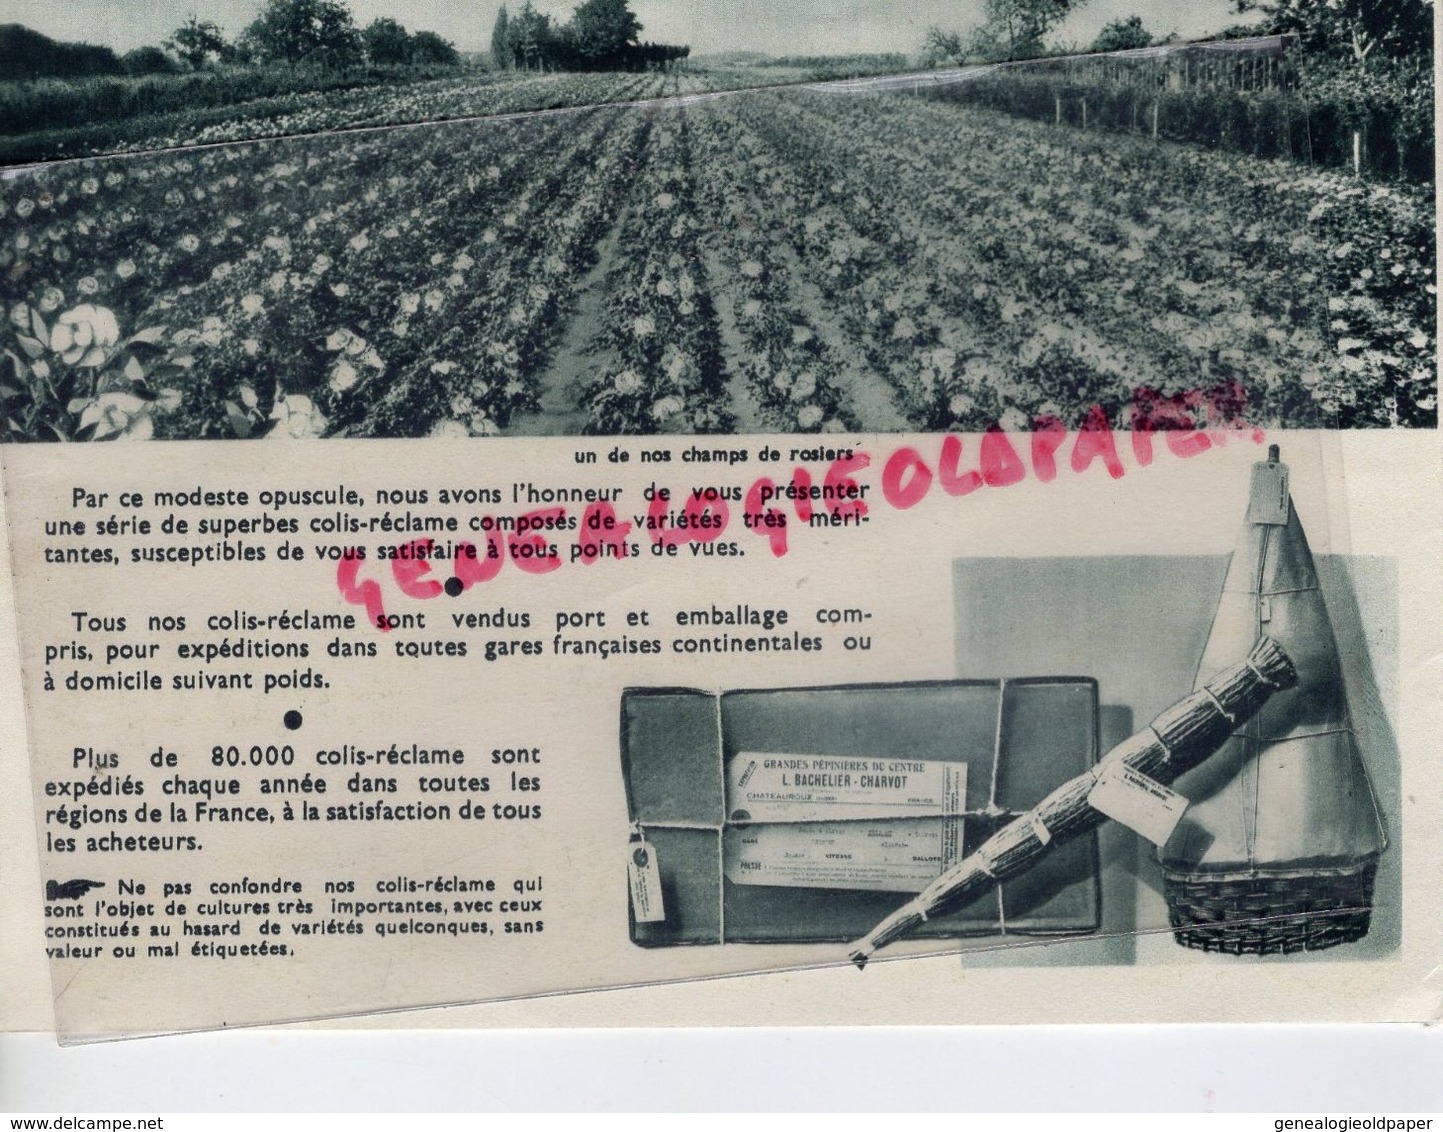 36- CHATEAUROUX- RARE DEPLIANT BACHELIER CHARVOT-ROSES-FLEURS-FRUITS-HORTICULTURE-PEPINIERES-IMPRIMERIE CRETE CORBEIL - Landwirtschaft